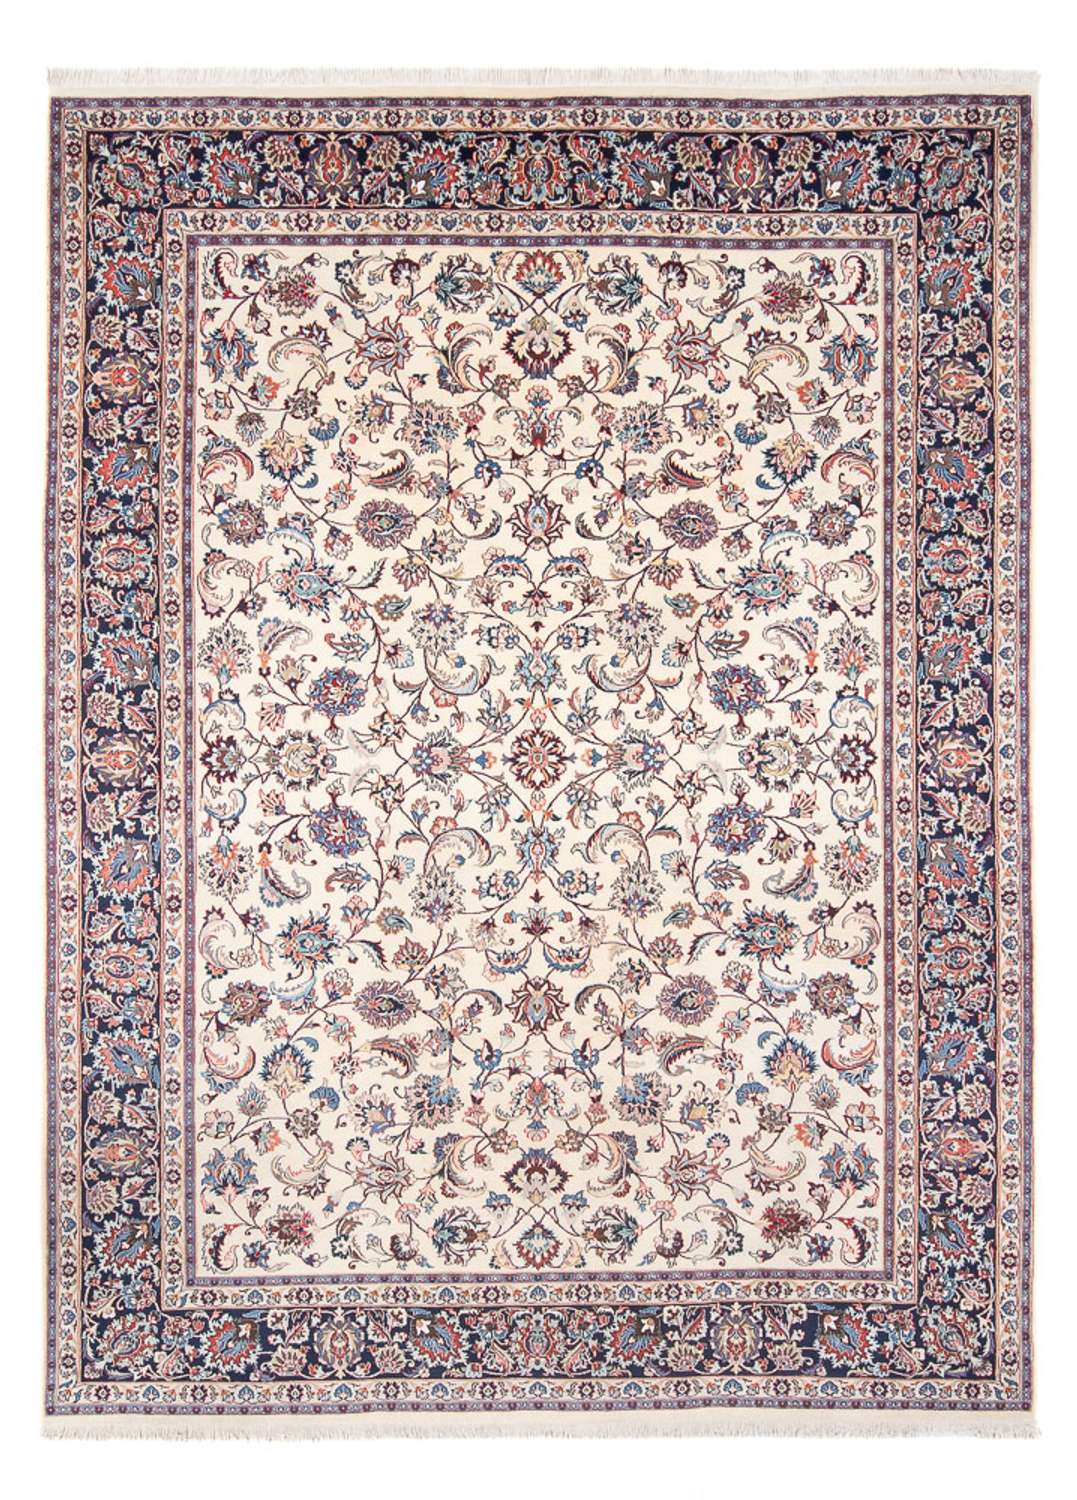 Persisk teppe - klassisk - 326 x 242 cm - krem